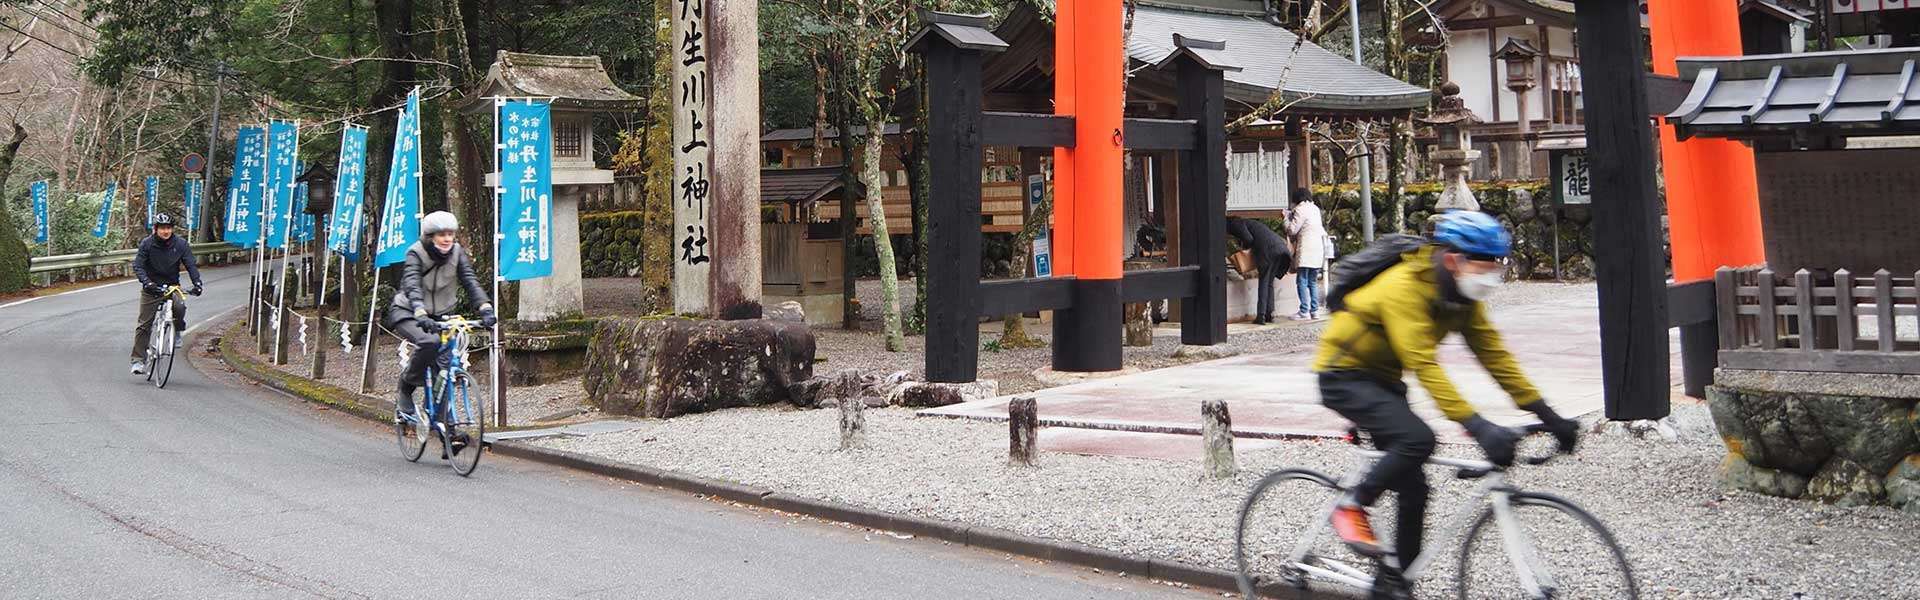 Casual Cycling in East Nara Nabari